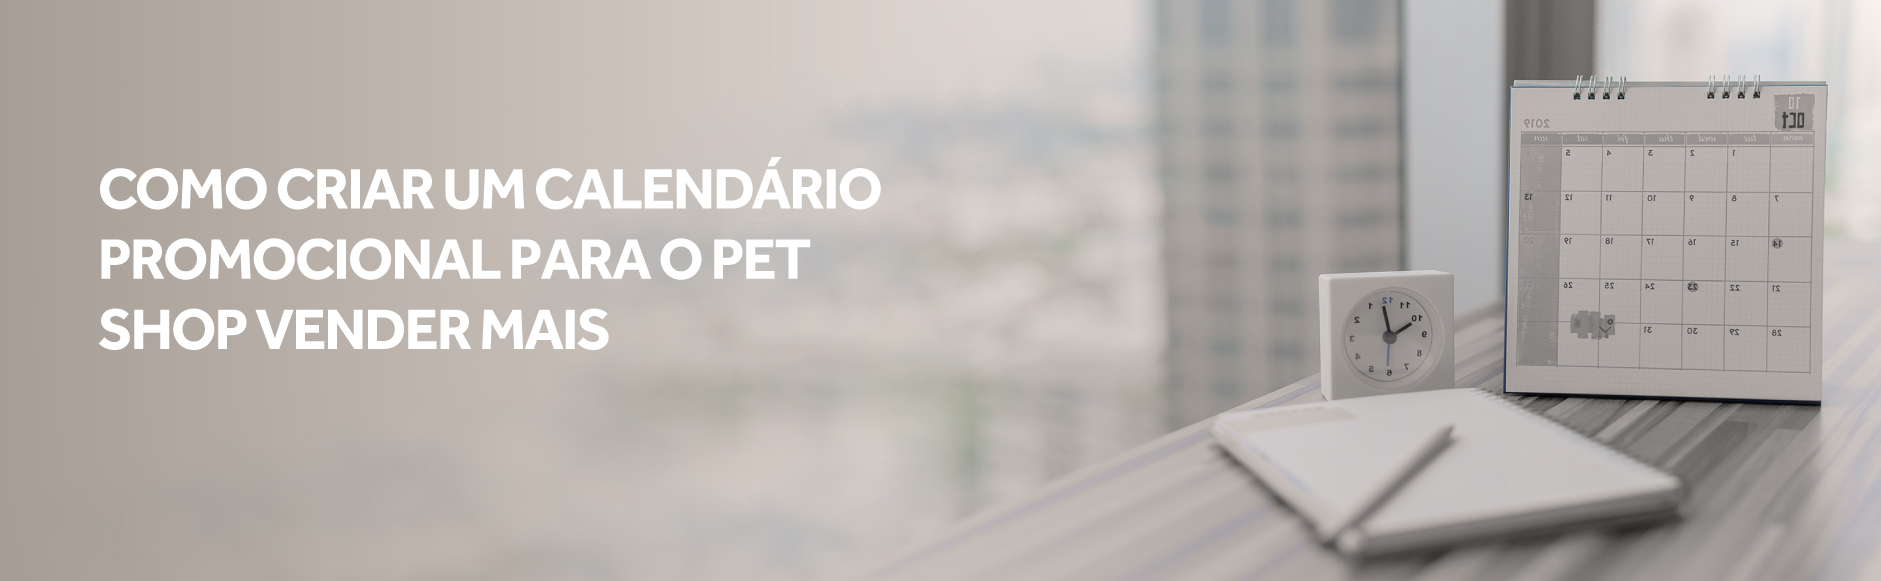 Blog Lojista | Como criar um calendário promocional para o pet shop vender mais